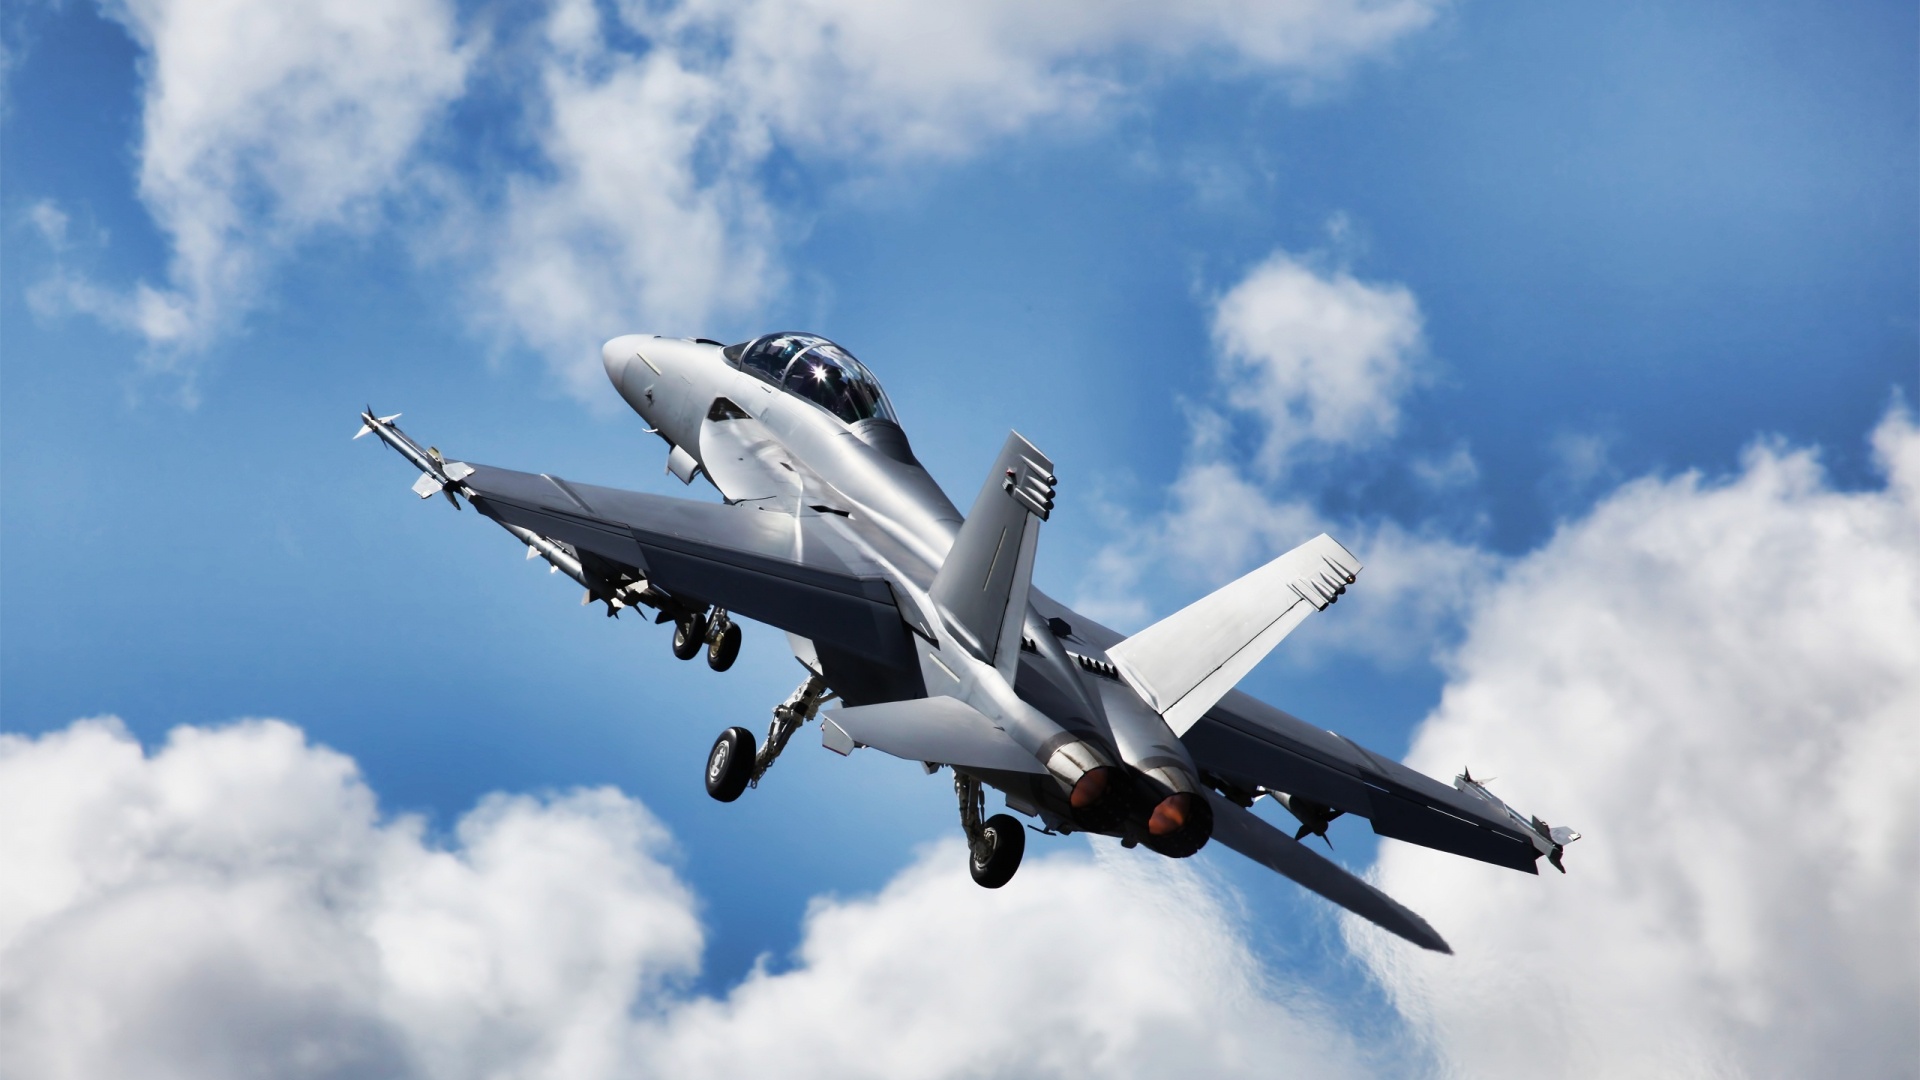 Скачать обои бесплатно Истребитель, Военные, Боинг F/a 18E/f Супер Хорнет, Боевой Самолет картинка на рабочий стол ПК